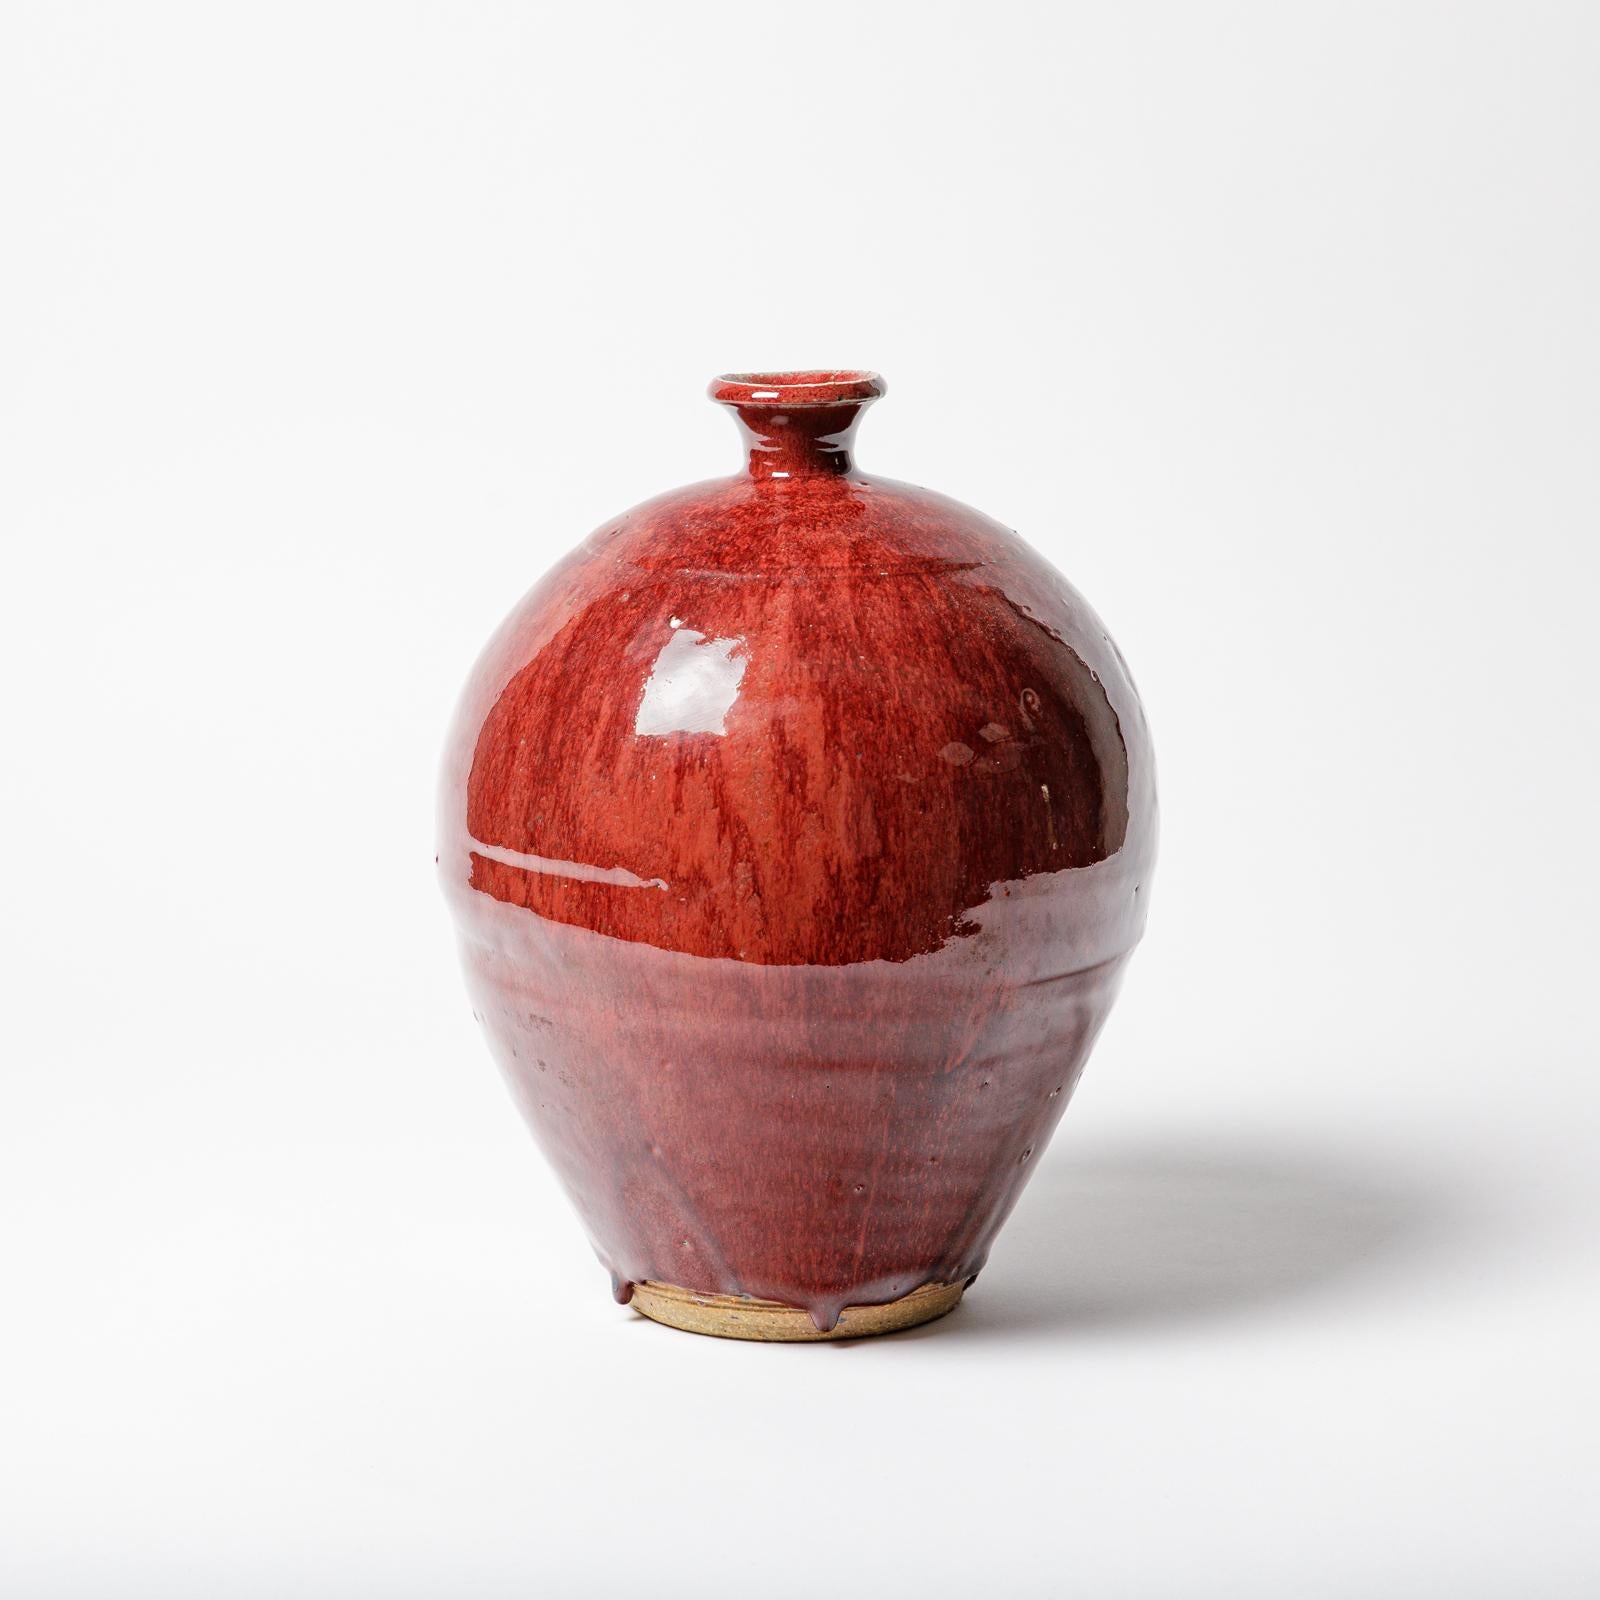 Vase aus Steinzeug mit rotem Glasurdekor von John Bailey für La Borne.
Perfekter Originalzustand.
Ca. 1980-1990.
Signiert am Sockel.
Einzigartiges Stück.